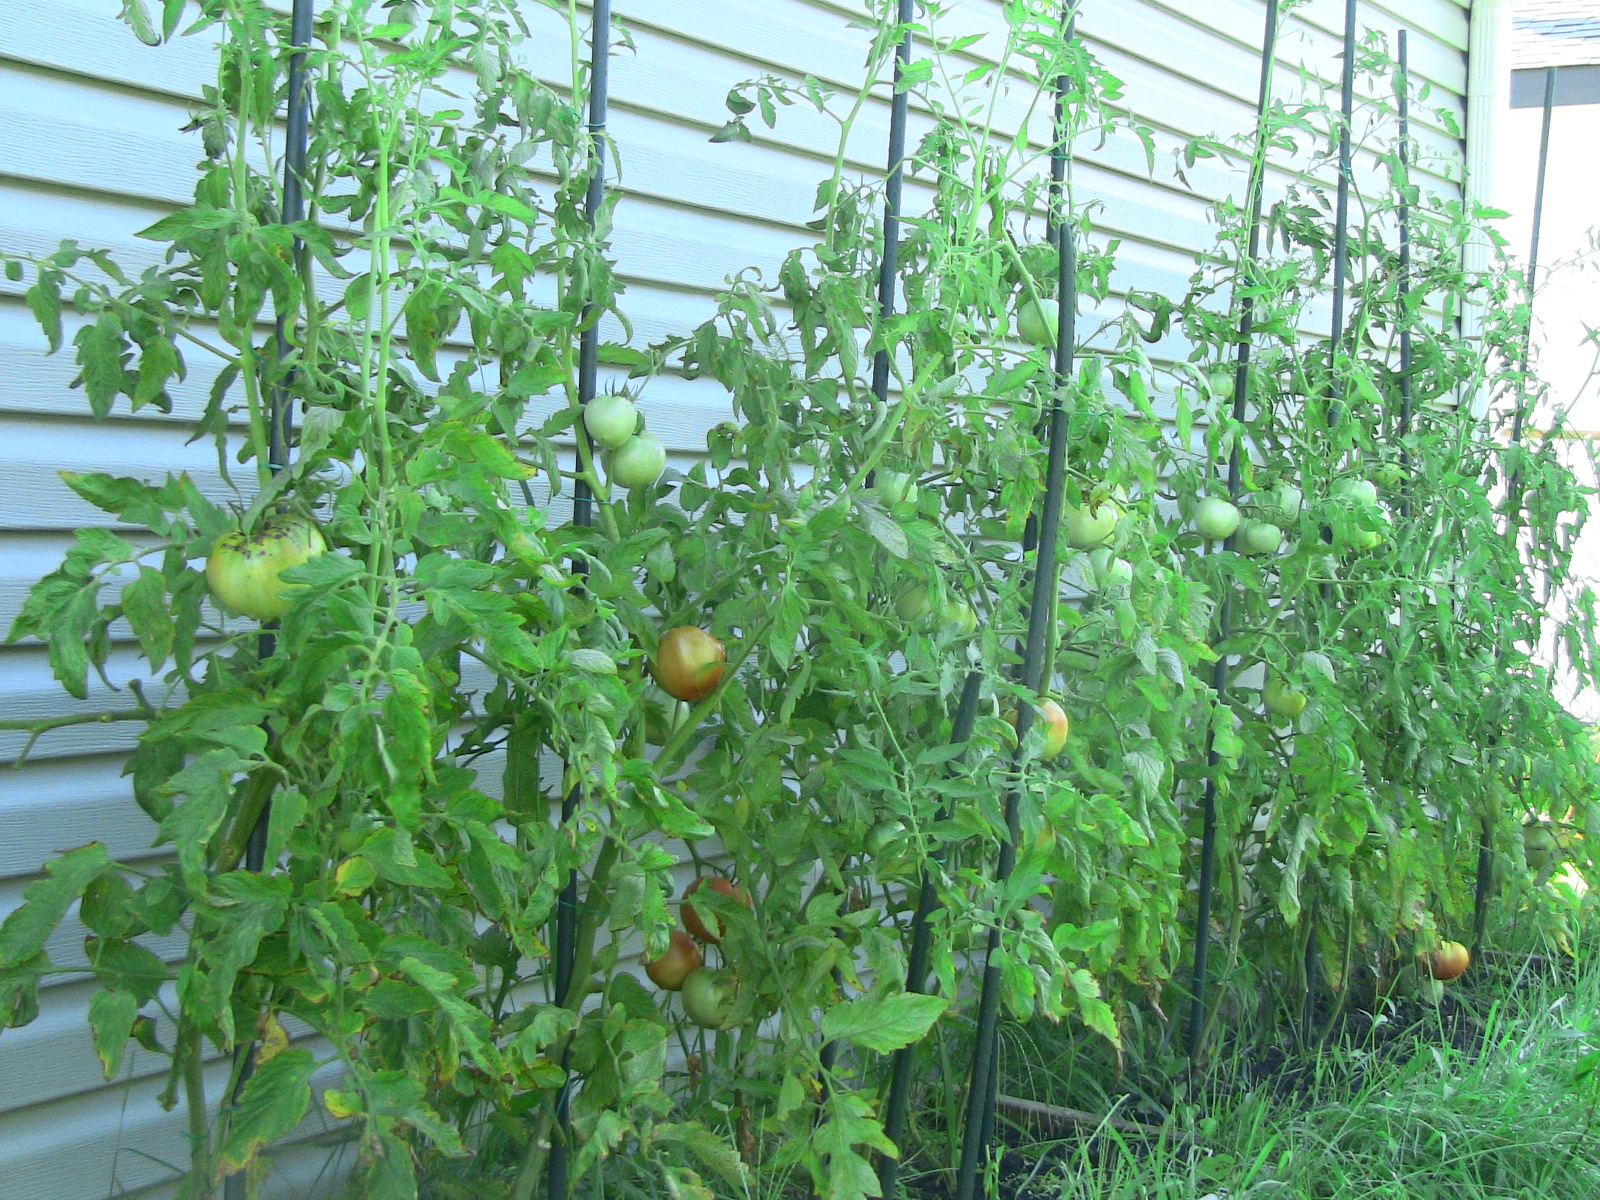 Wisconsin 55 Tomato Plants